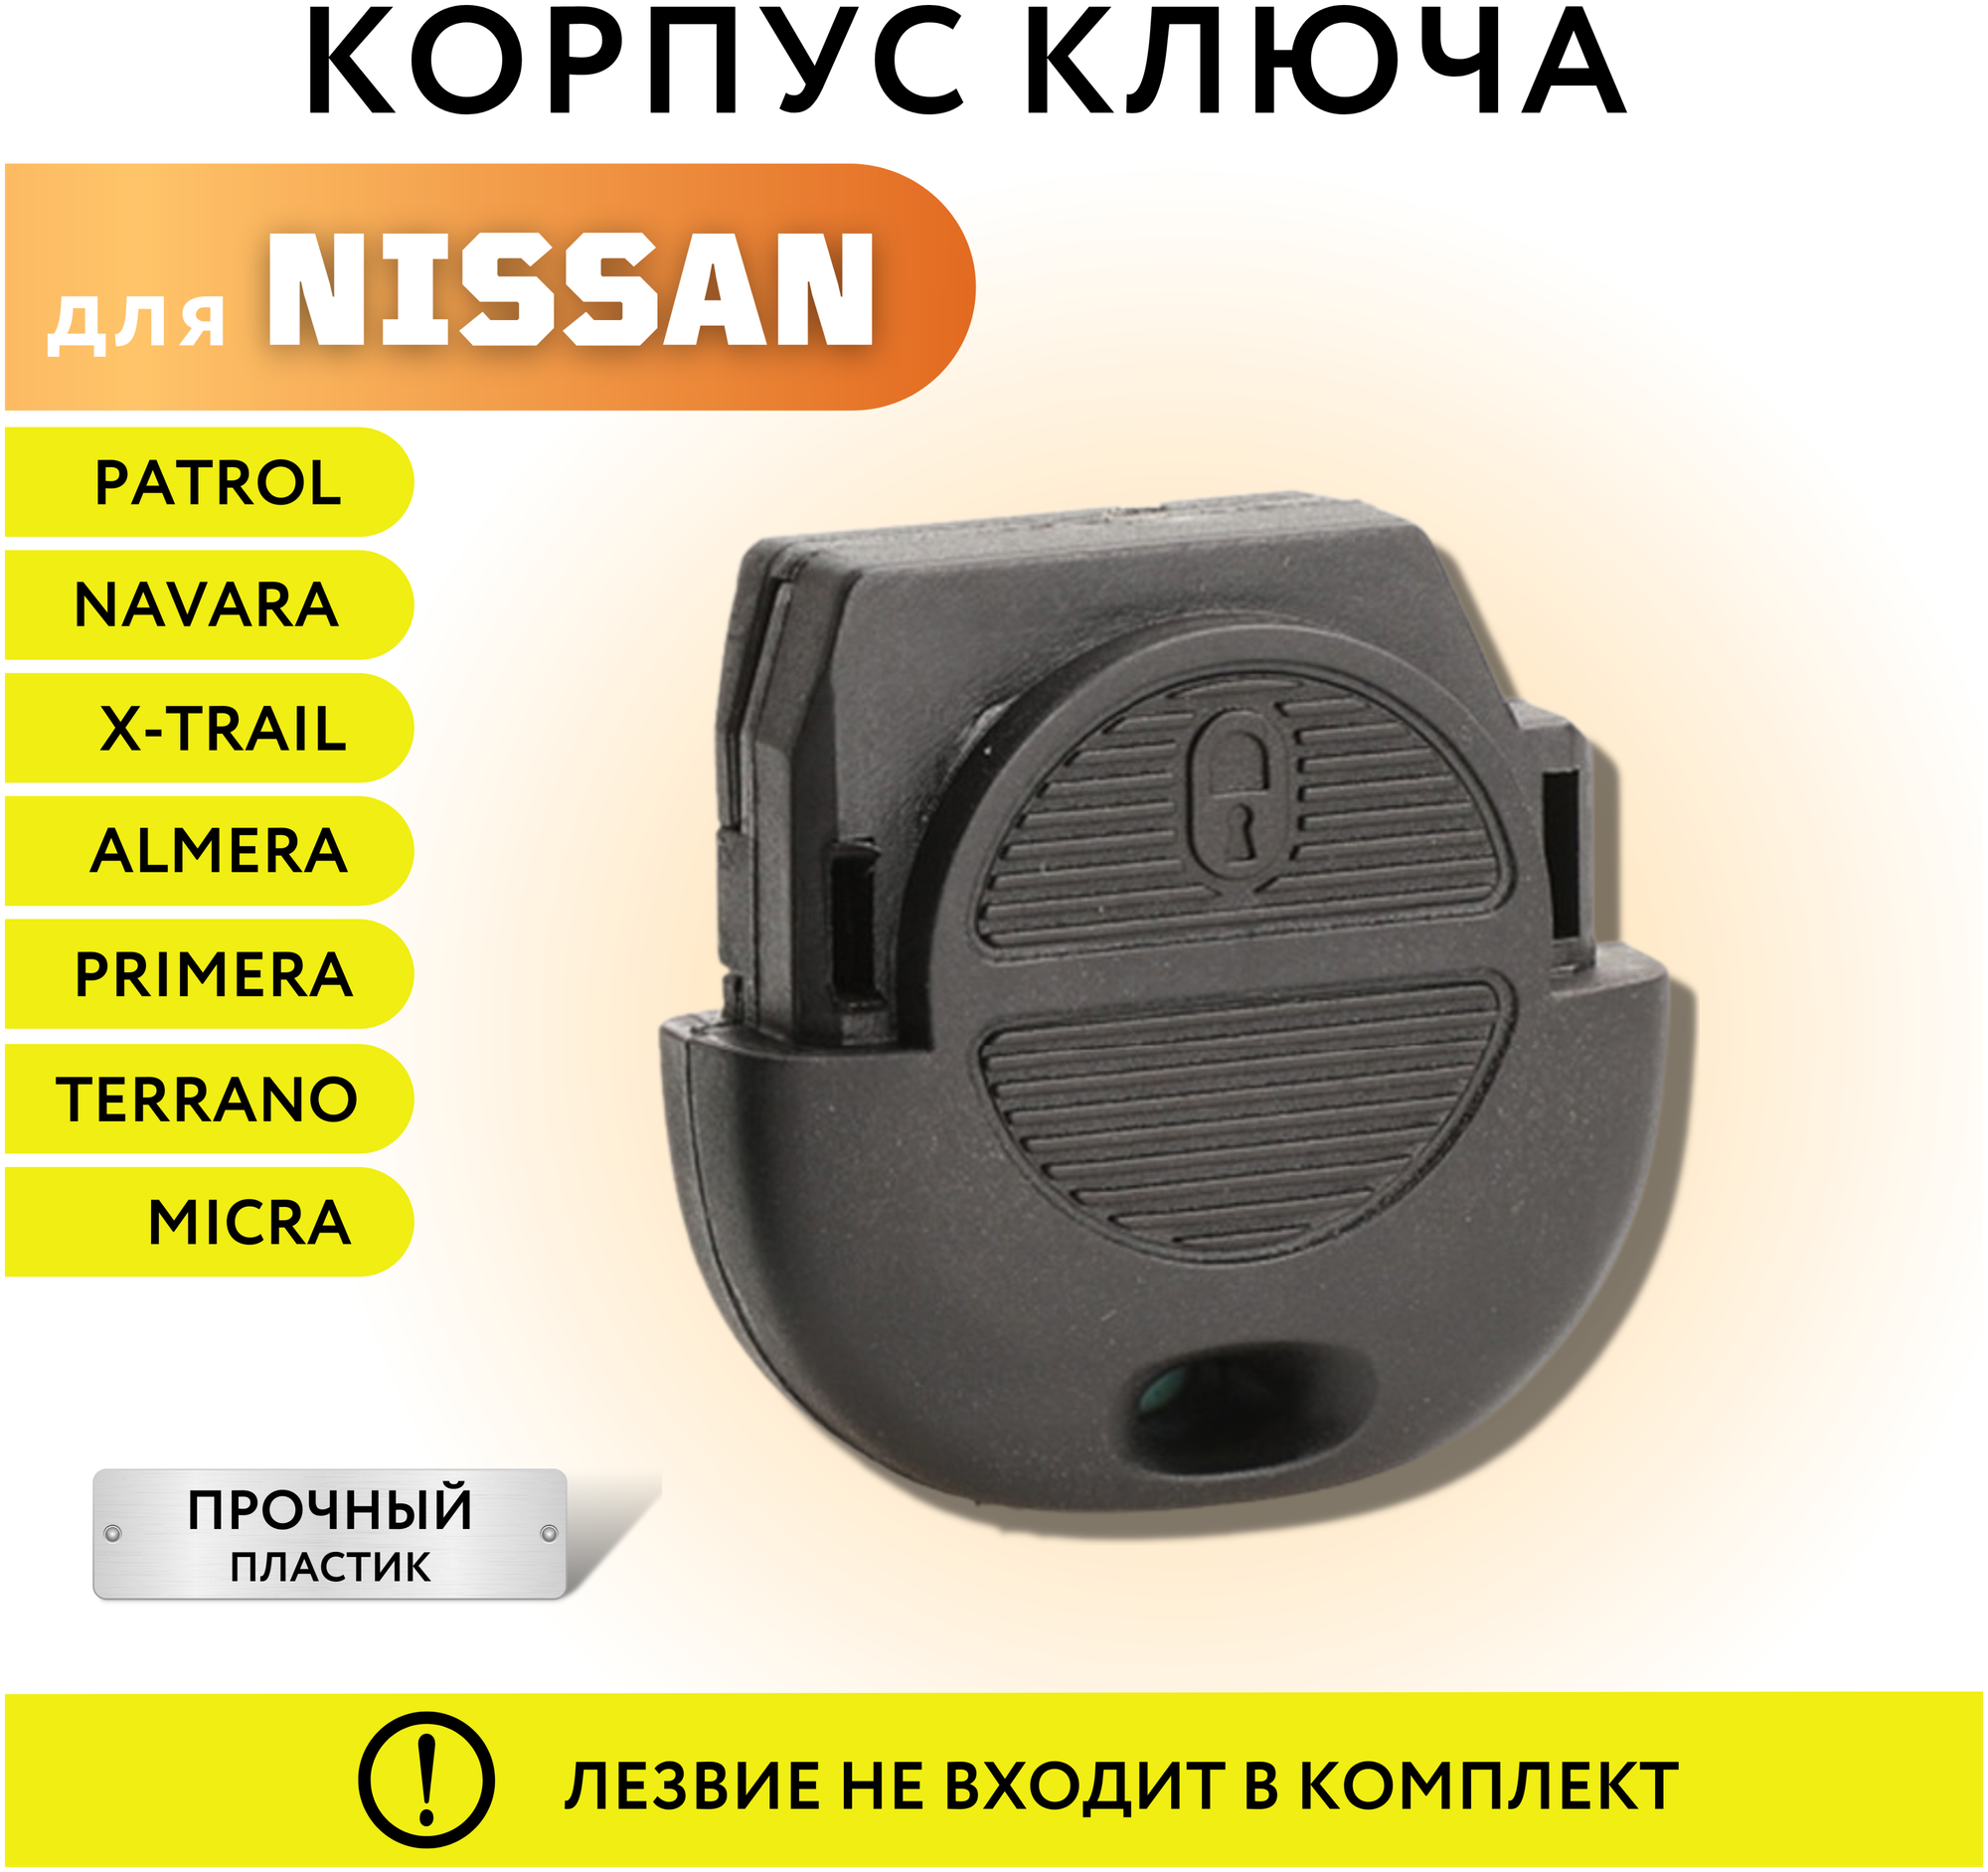 Корпус для ключа зажигания Ниссан Микра/Альмера/Примера/Х-Трейл корпус ключа Nissan Micra/ Almera/ Primera/ X-Trail